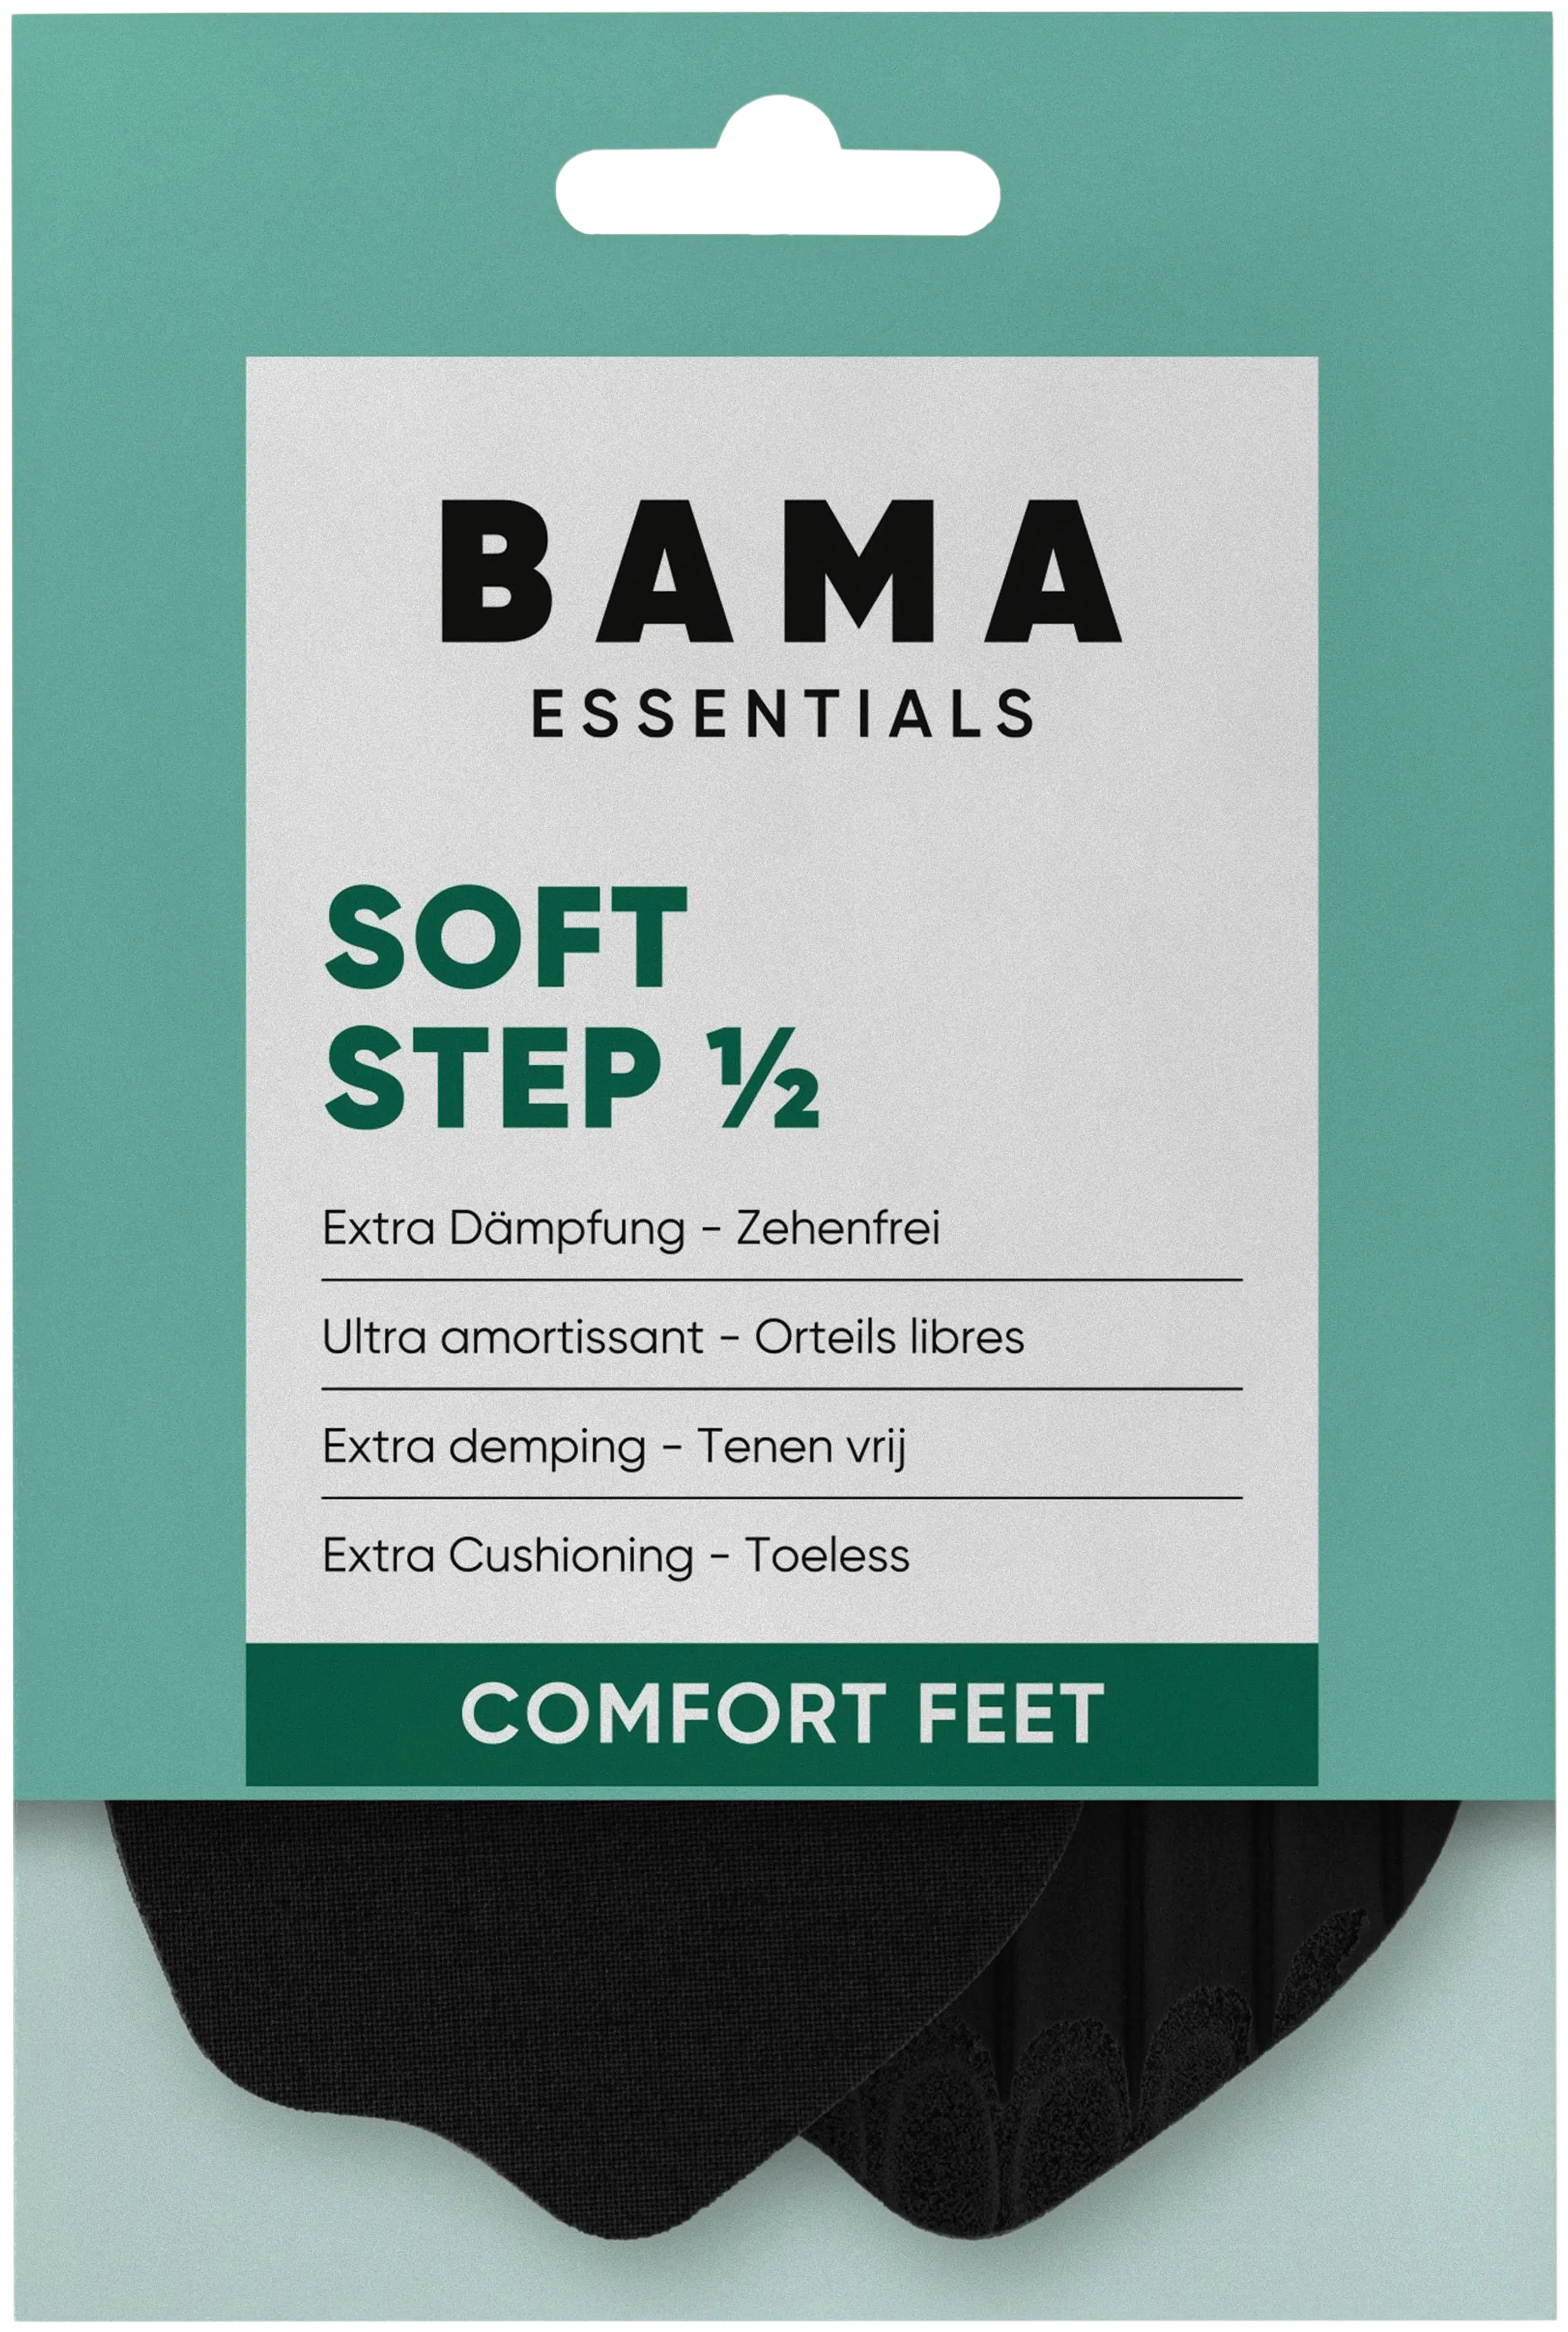 BAMA Soft Step Half 35/36